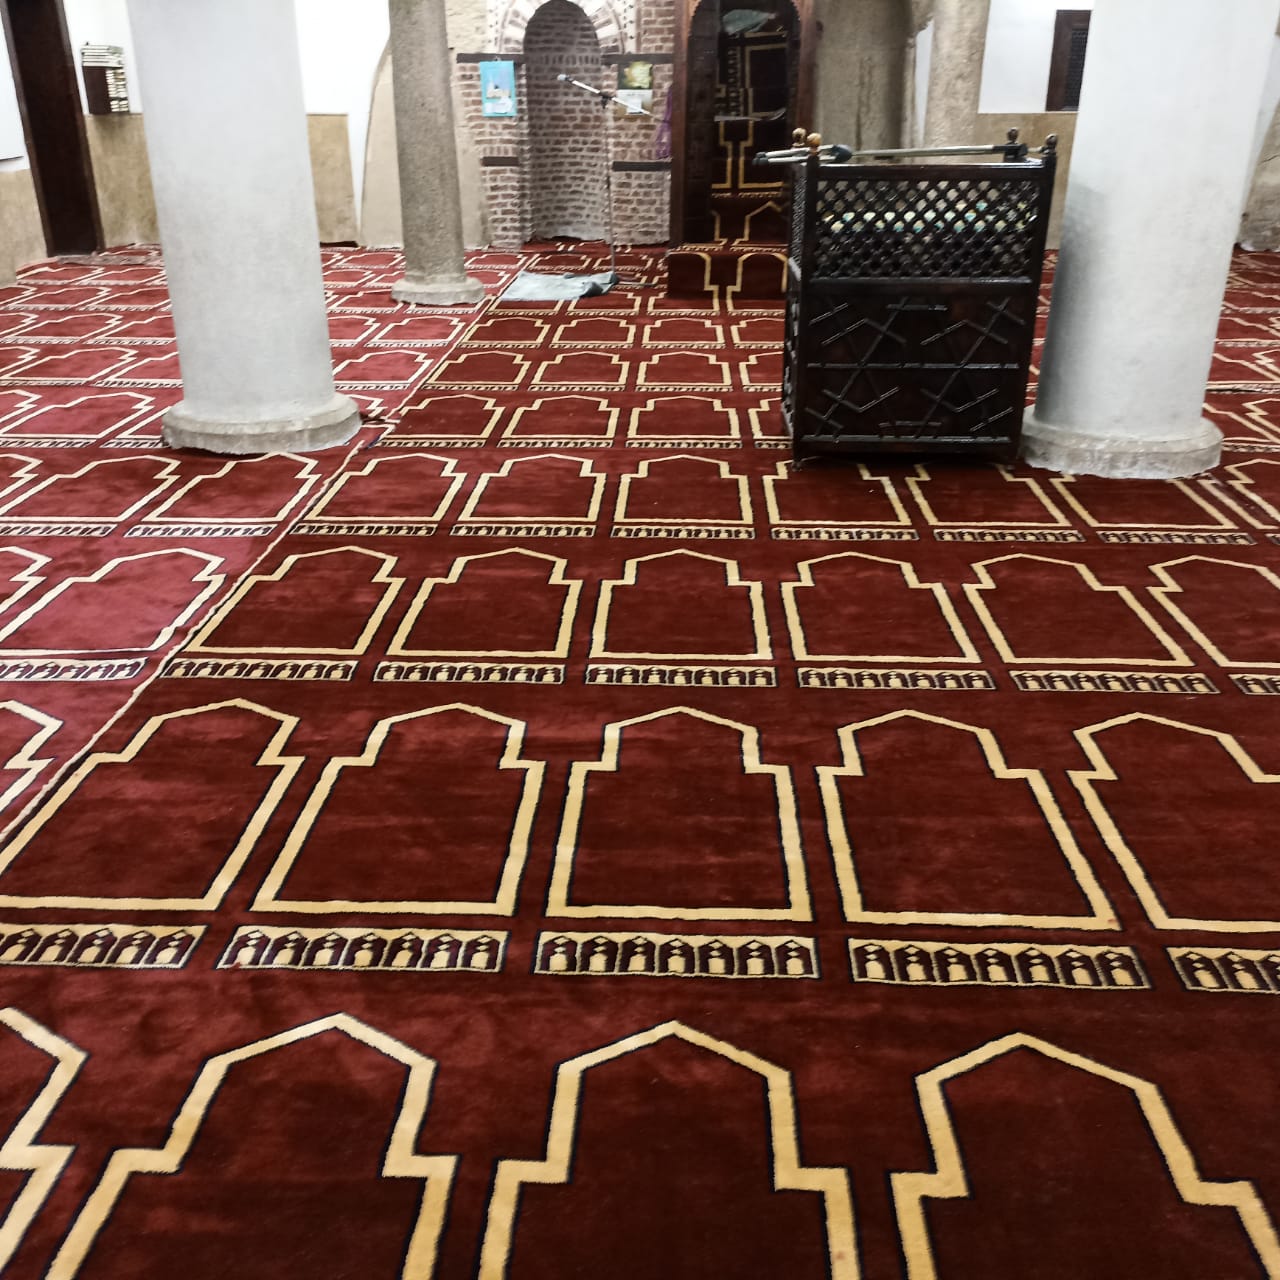 الإنتهاء من فرش مسجد أبي الحجاج الأقصرى بمدينة الأقصر